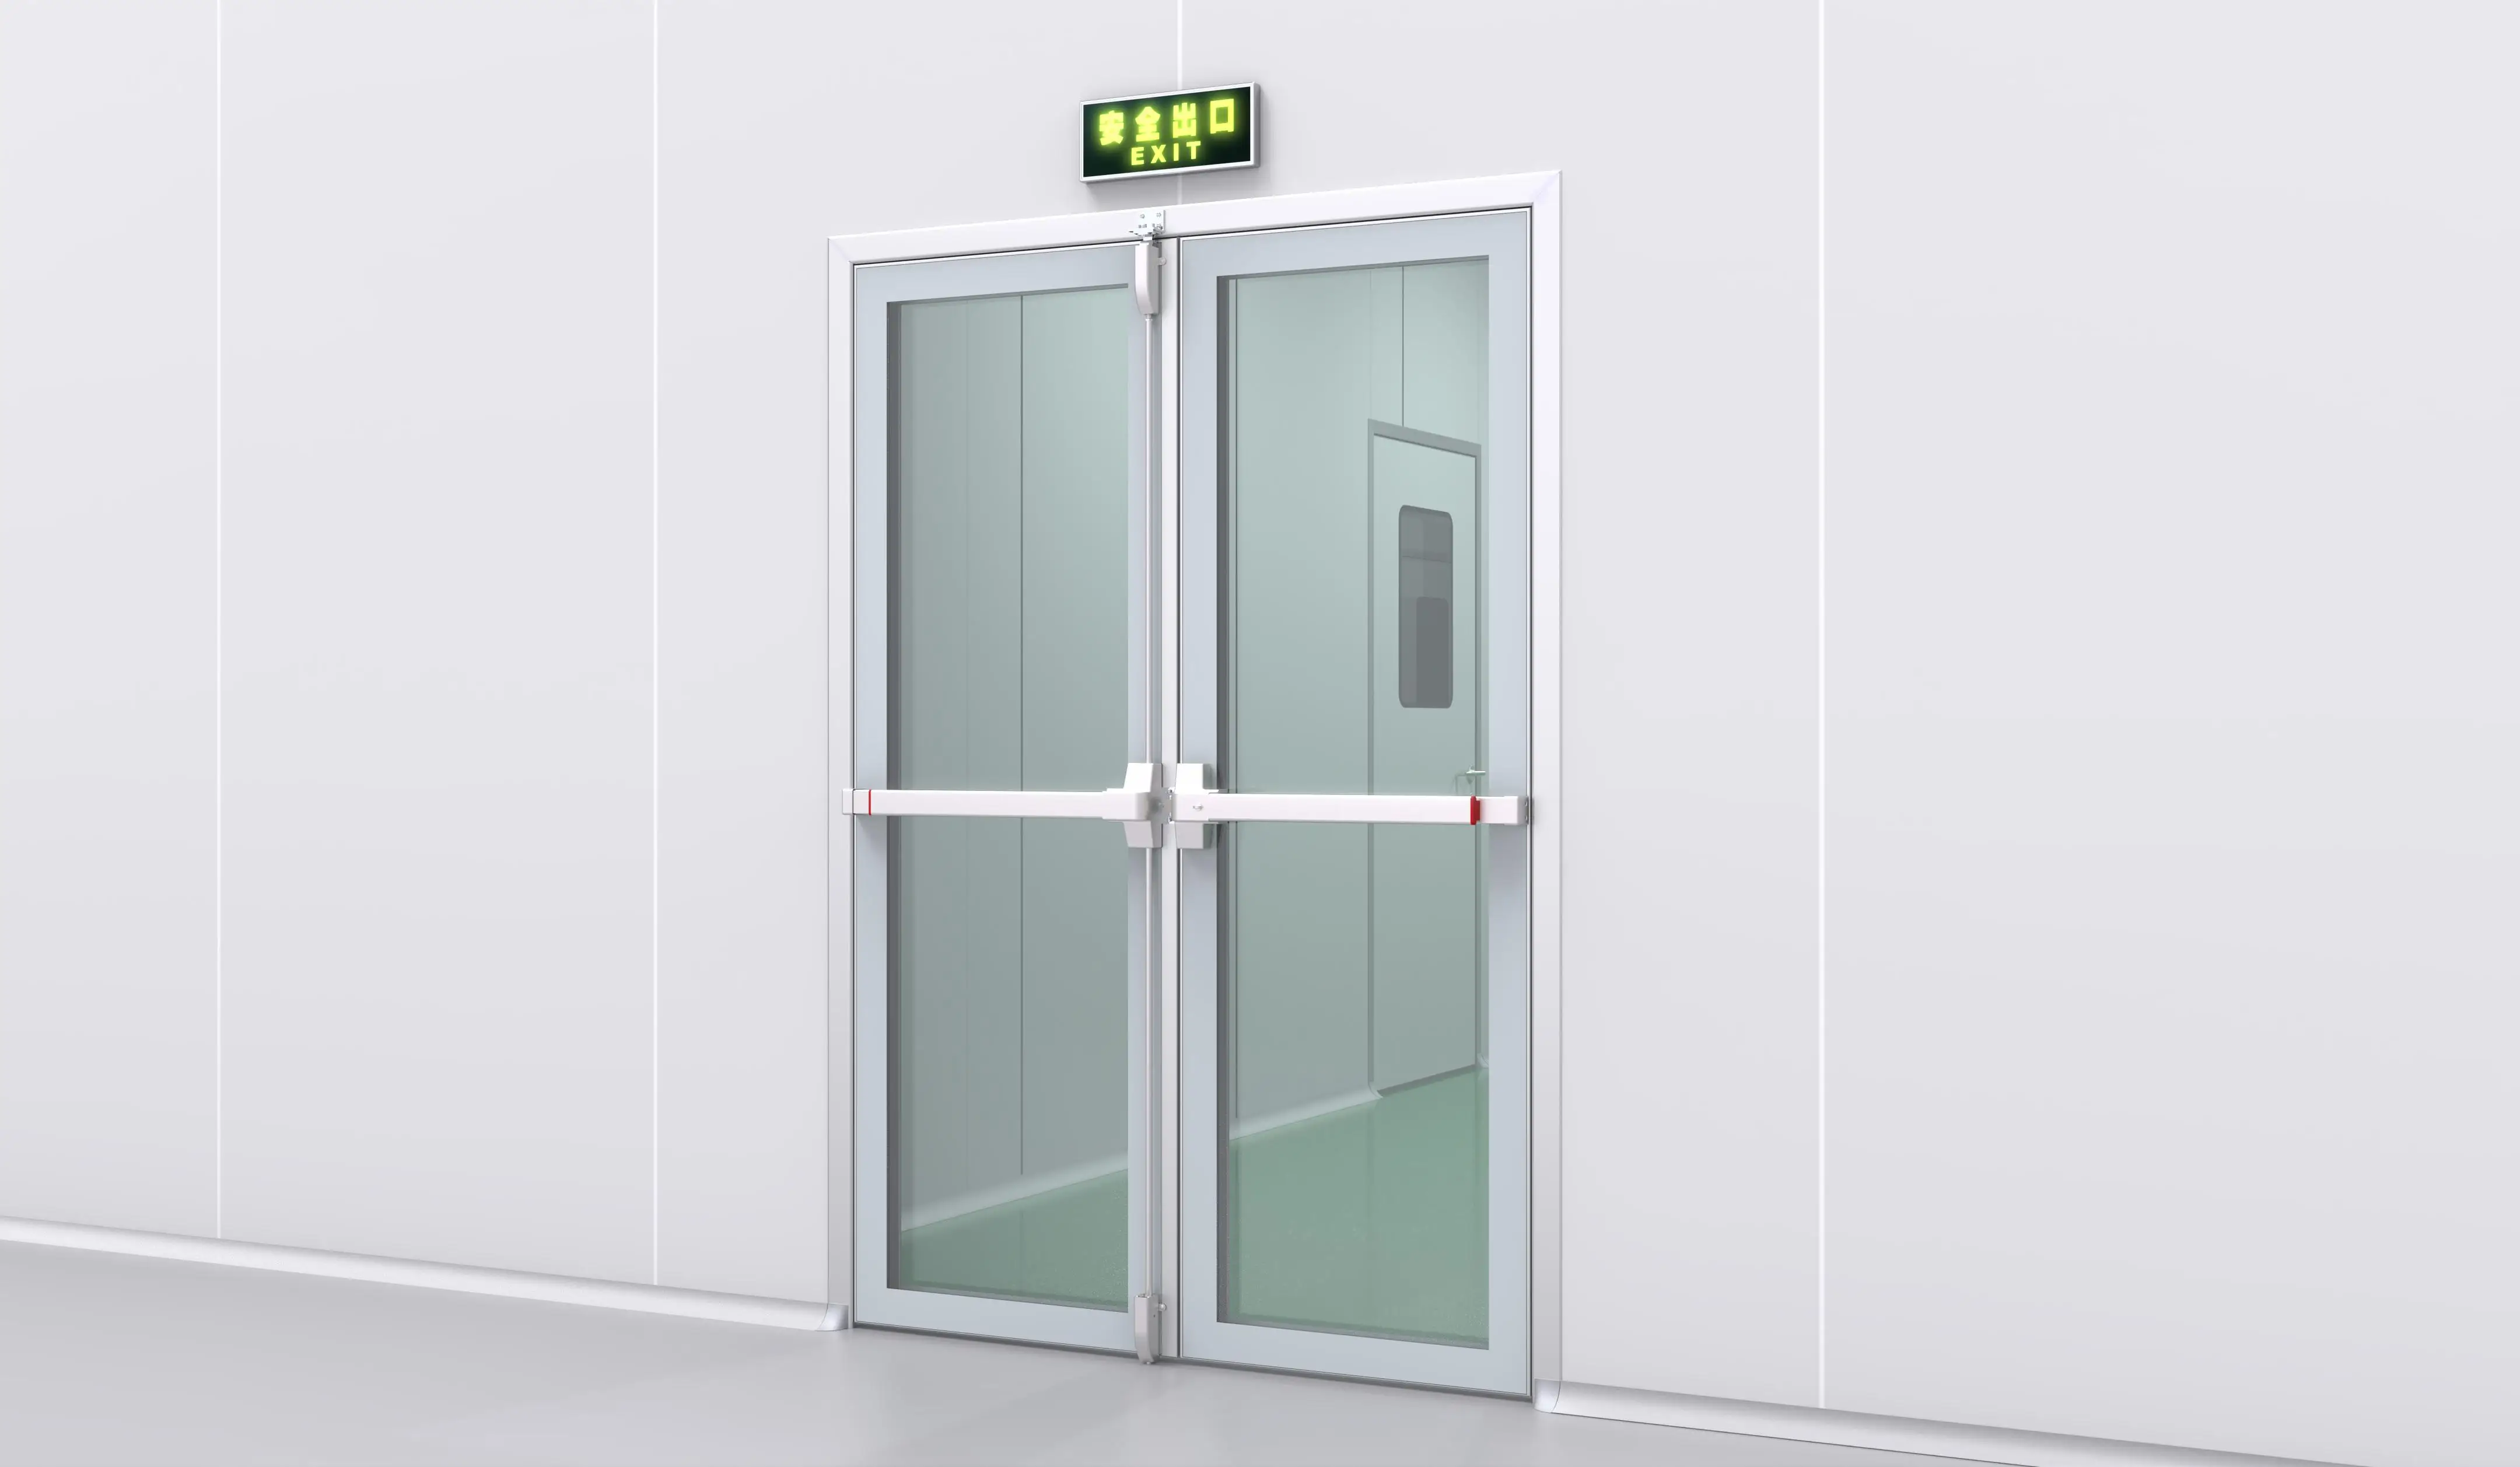 Concept Emergency Exit Door Bars - Image to u